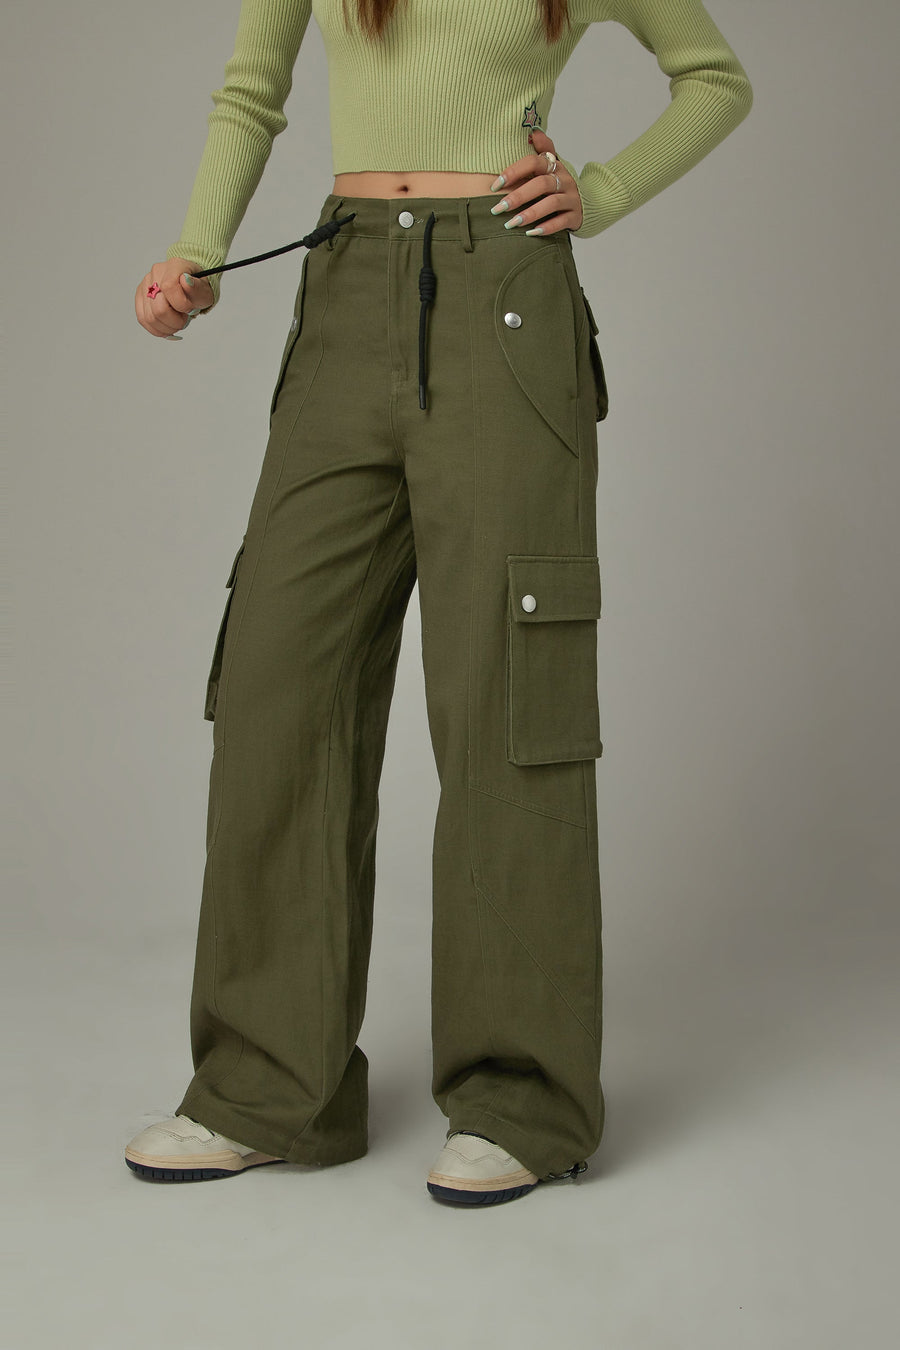 CHUU Pocket String Jogger Pants